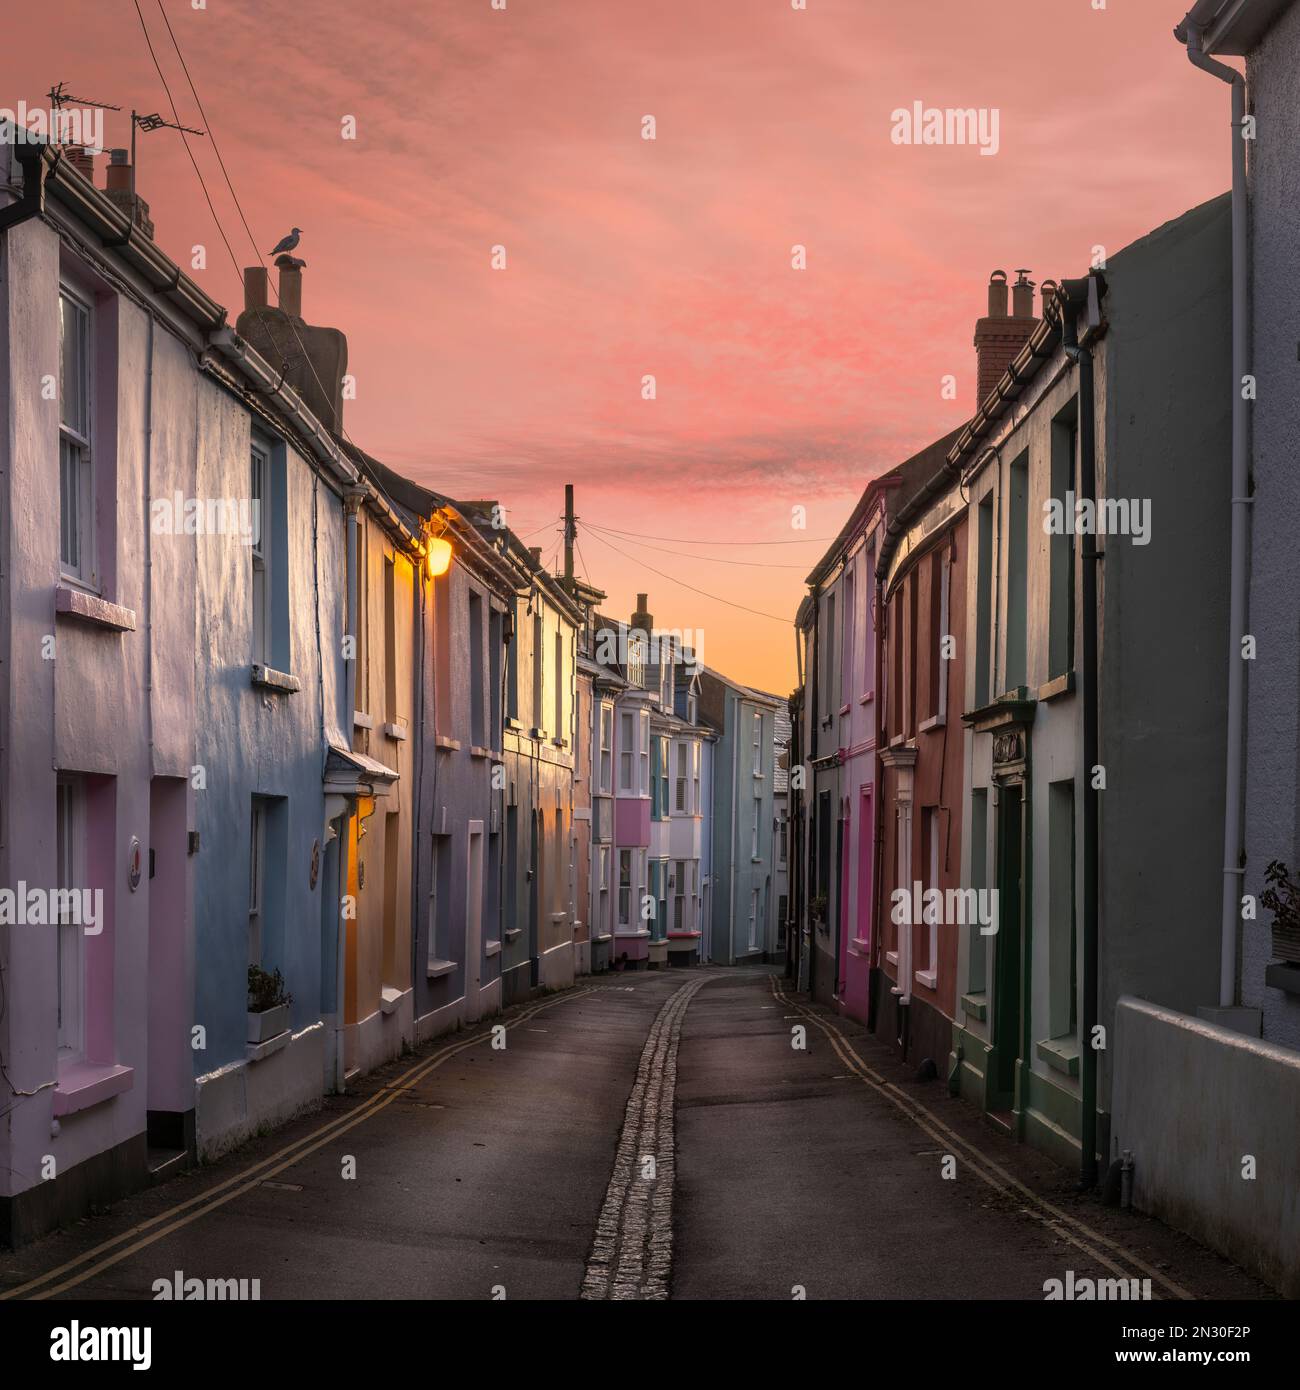 Les couleurs pastel du ciel de l'aube complètent les couleurs pastel des bâtiments de la rue Irsha, Appledore, North Devon. Banque D'Images